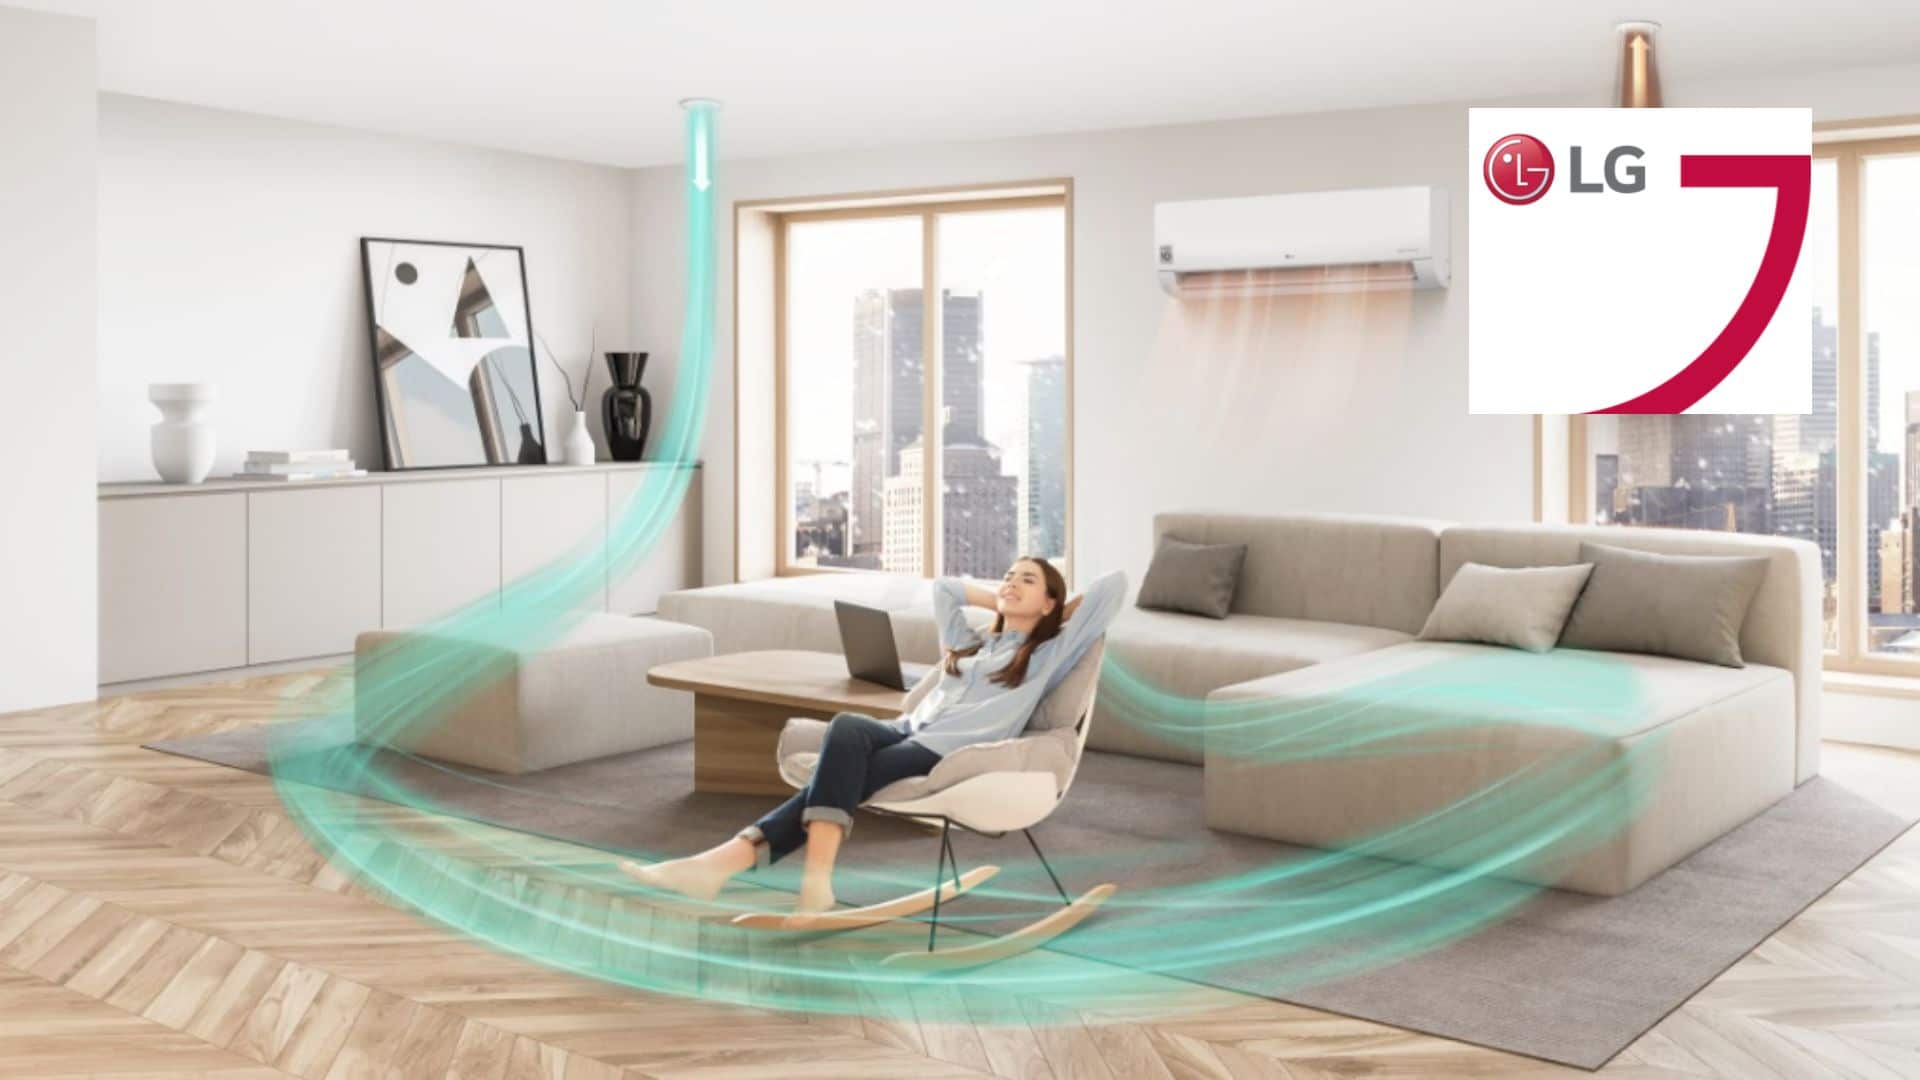 La nouvelle solution de ventilation de LG allié confort intérieur et économies d’énergie